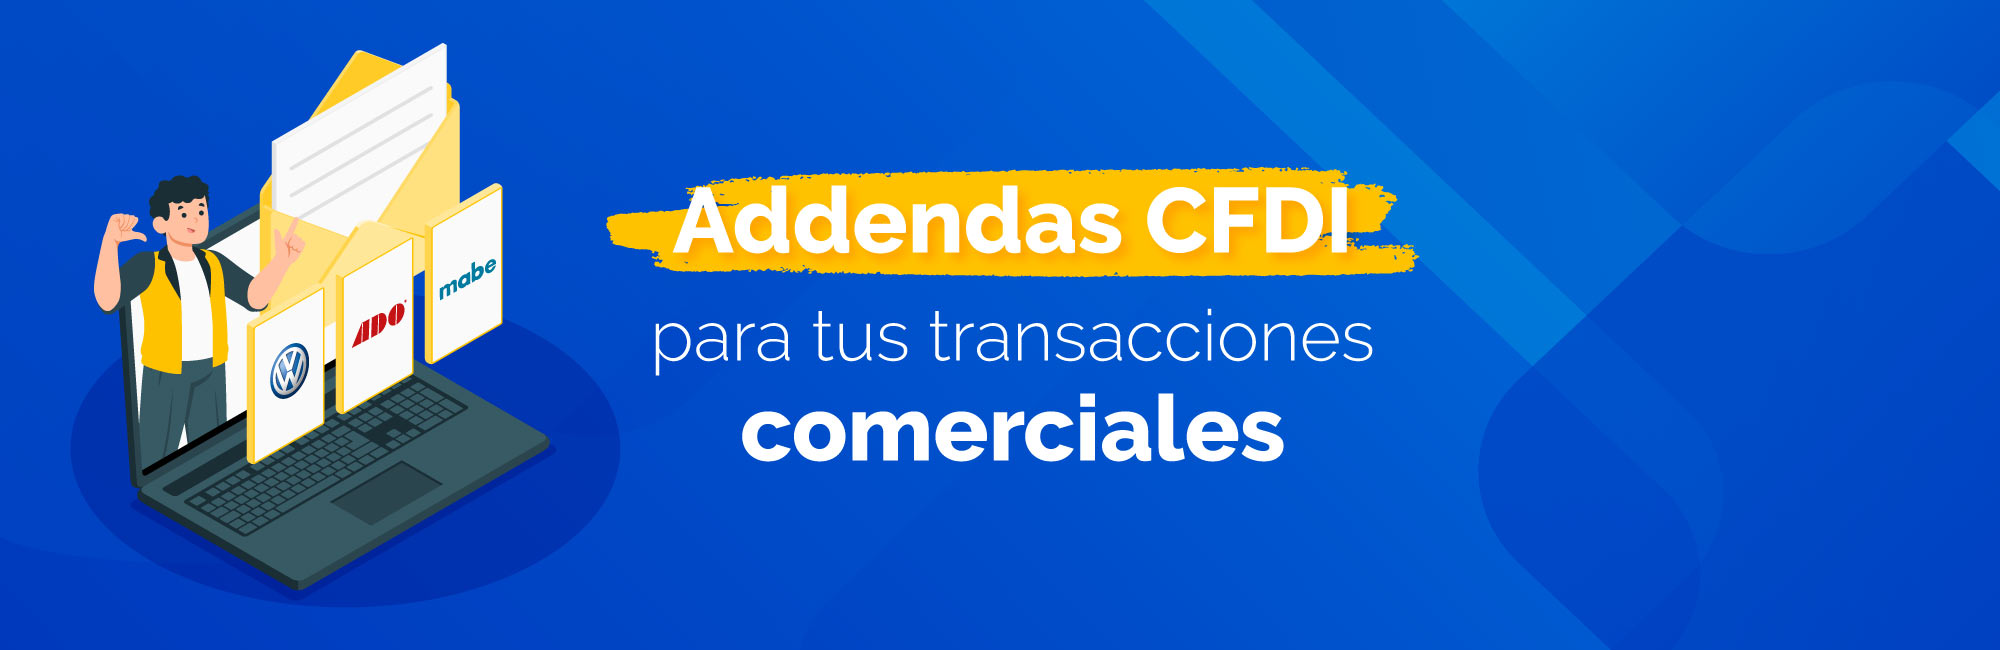  Integra la Addenda a tu CFDI, si no la tenemos la creamos a la necesidades de tu empresa. Addendas para CFDI